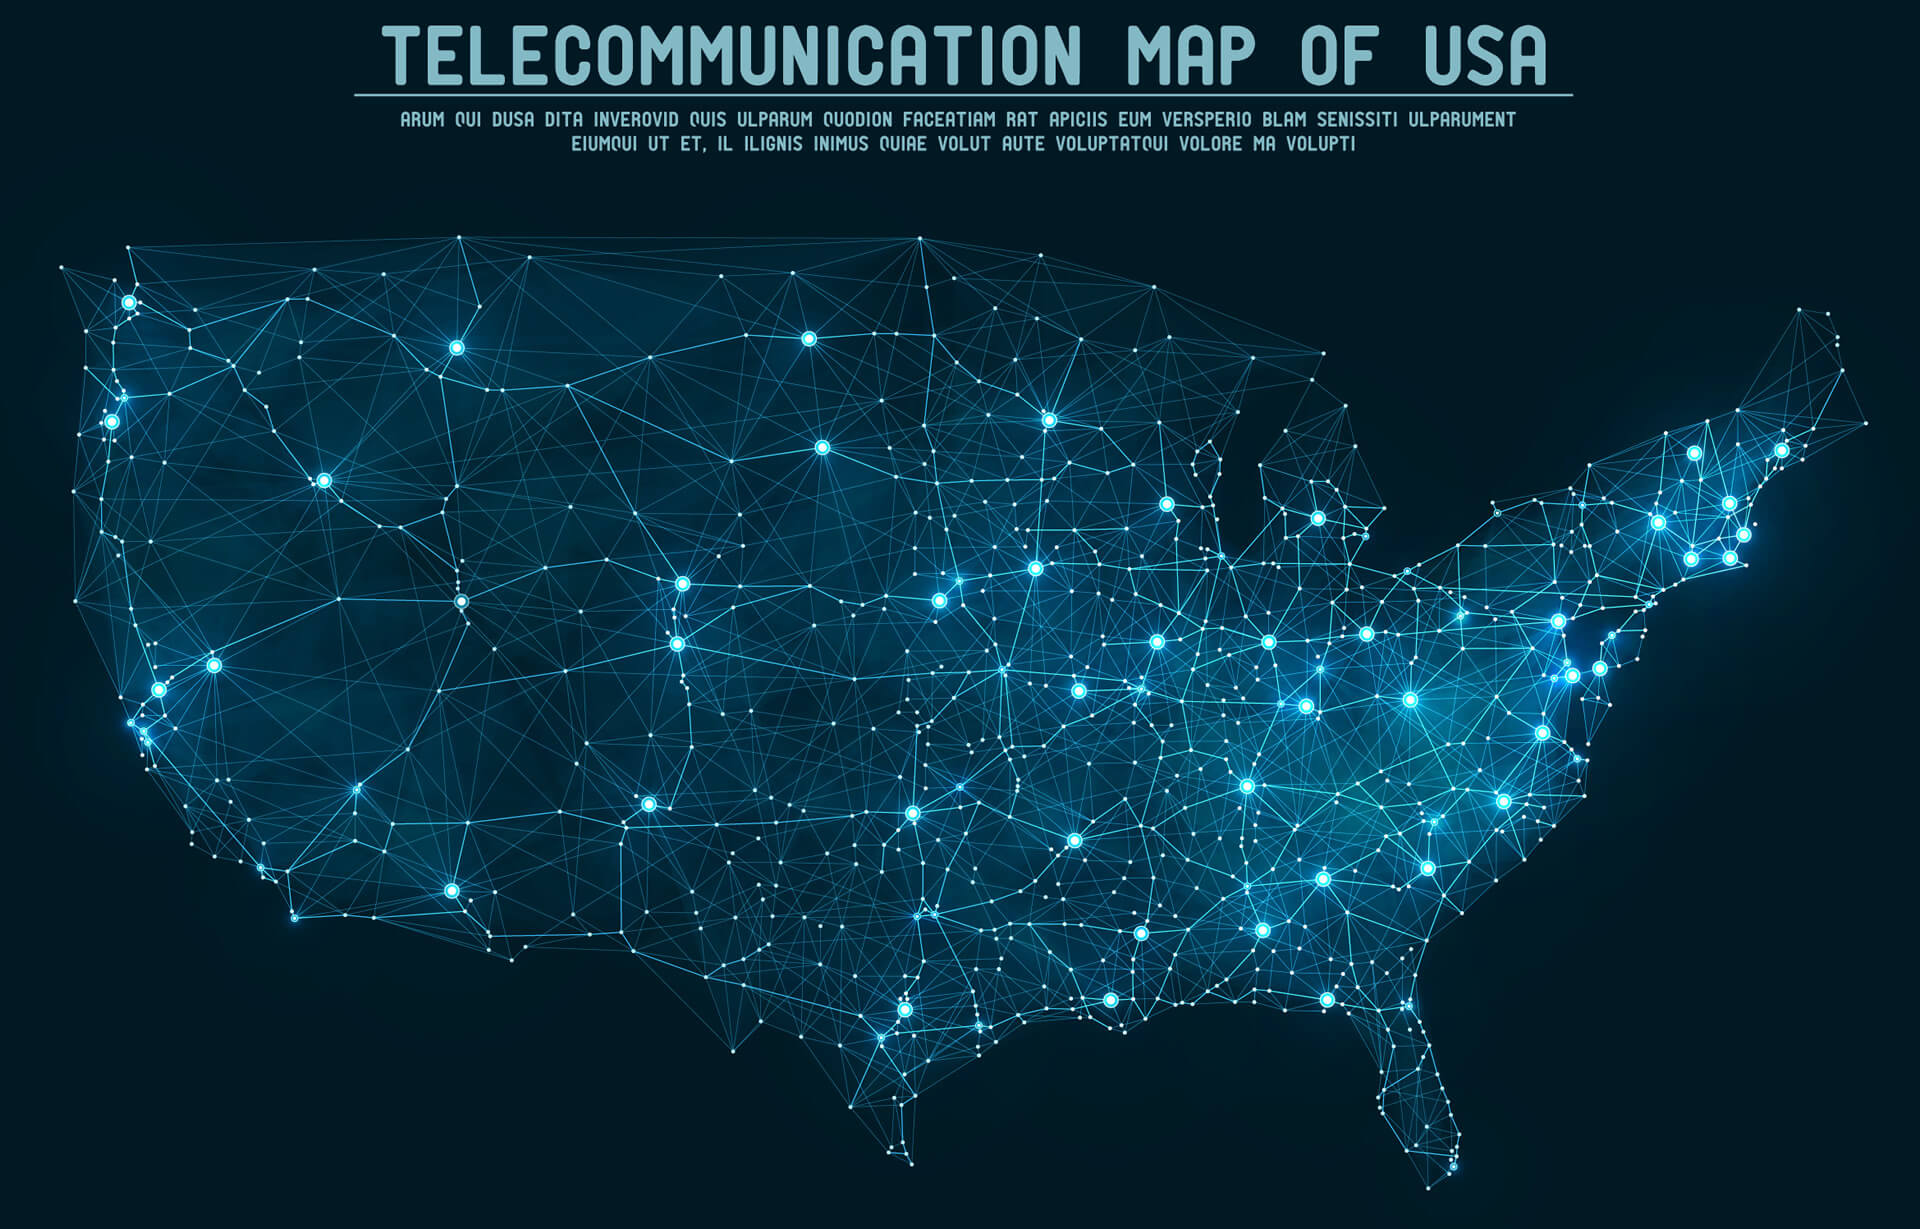 Telecommunication Network Map of USA